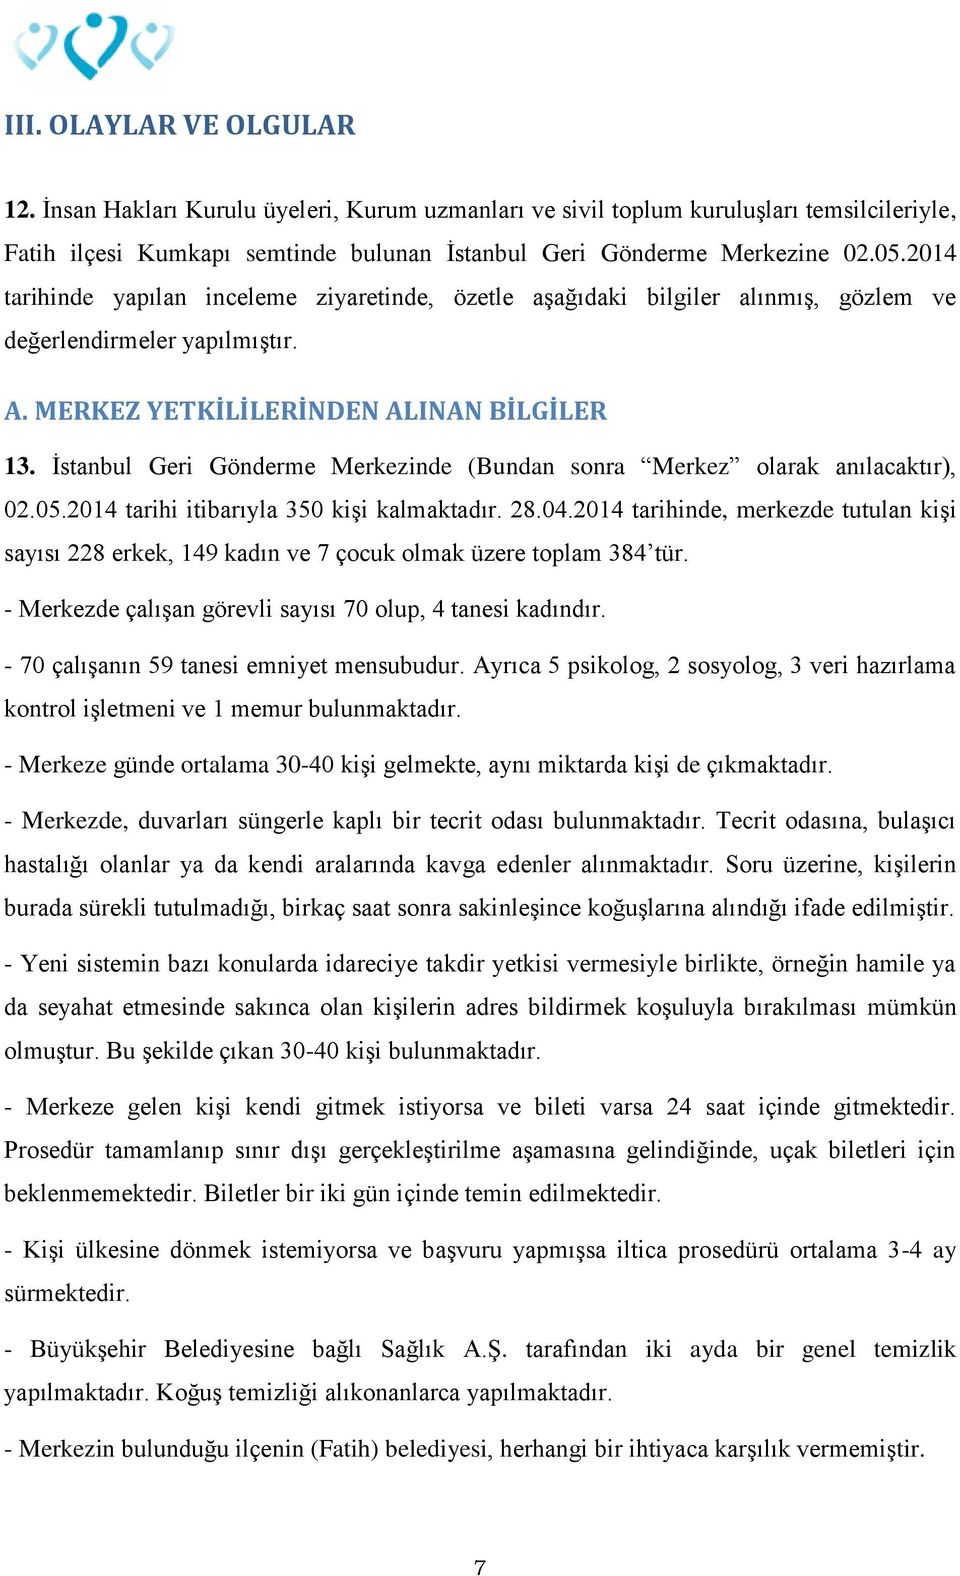 İstanbul Geri Gönderme Merkezinde (Bundan sonra Merkez olarak anılacaktır), 02.05.2014 tarihi itibarıyla 350 kişi kalmaktadır. 28.04.